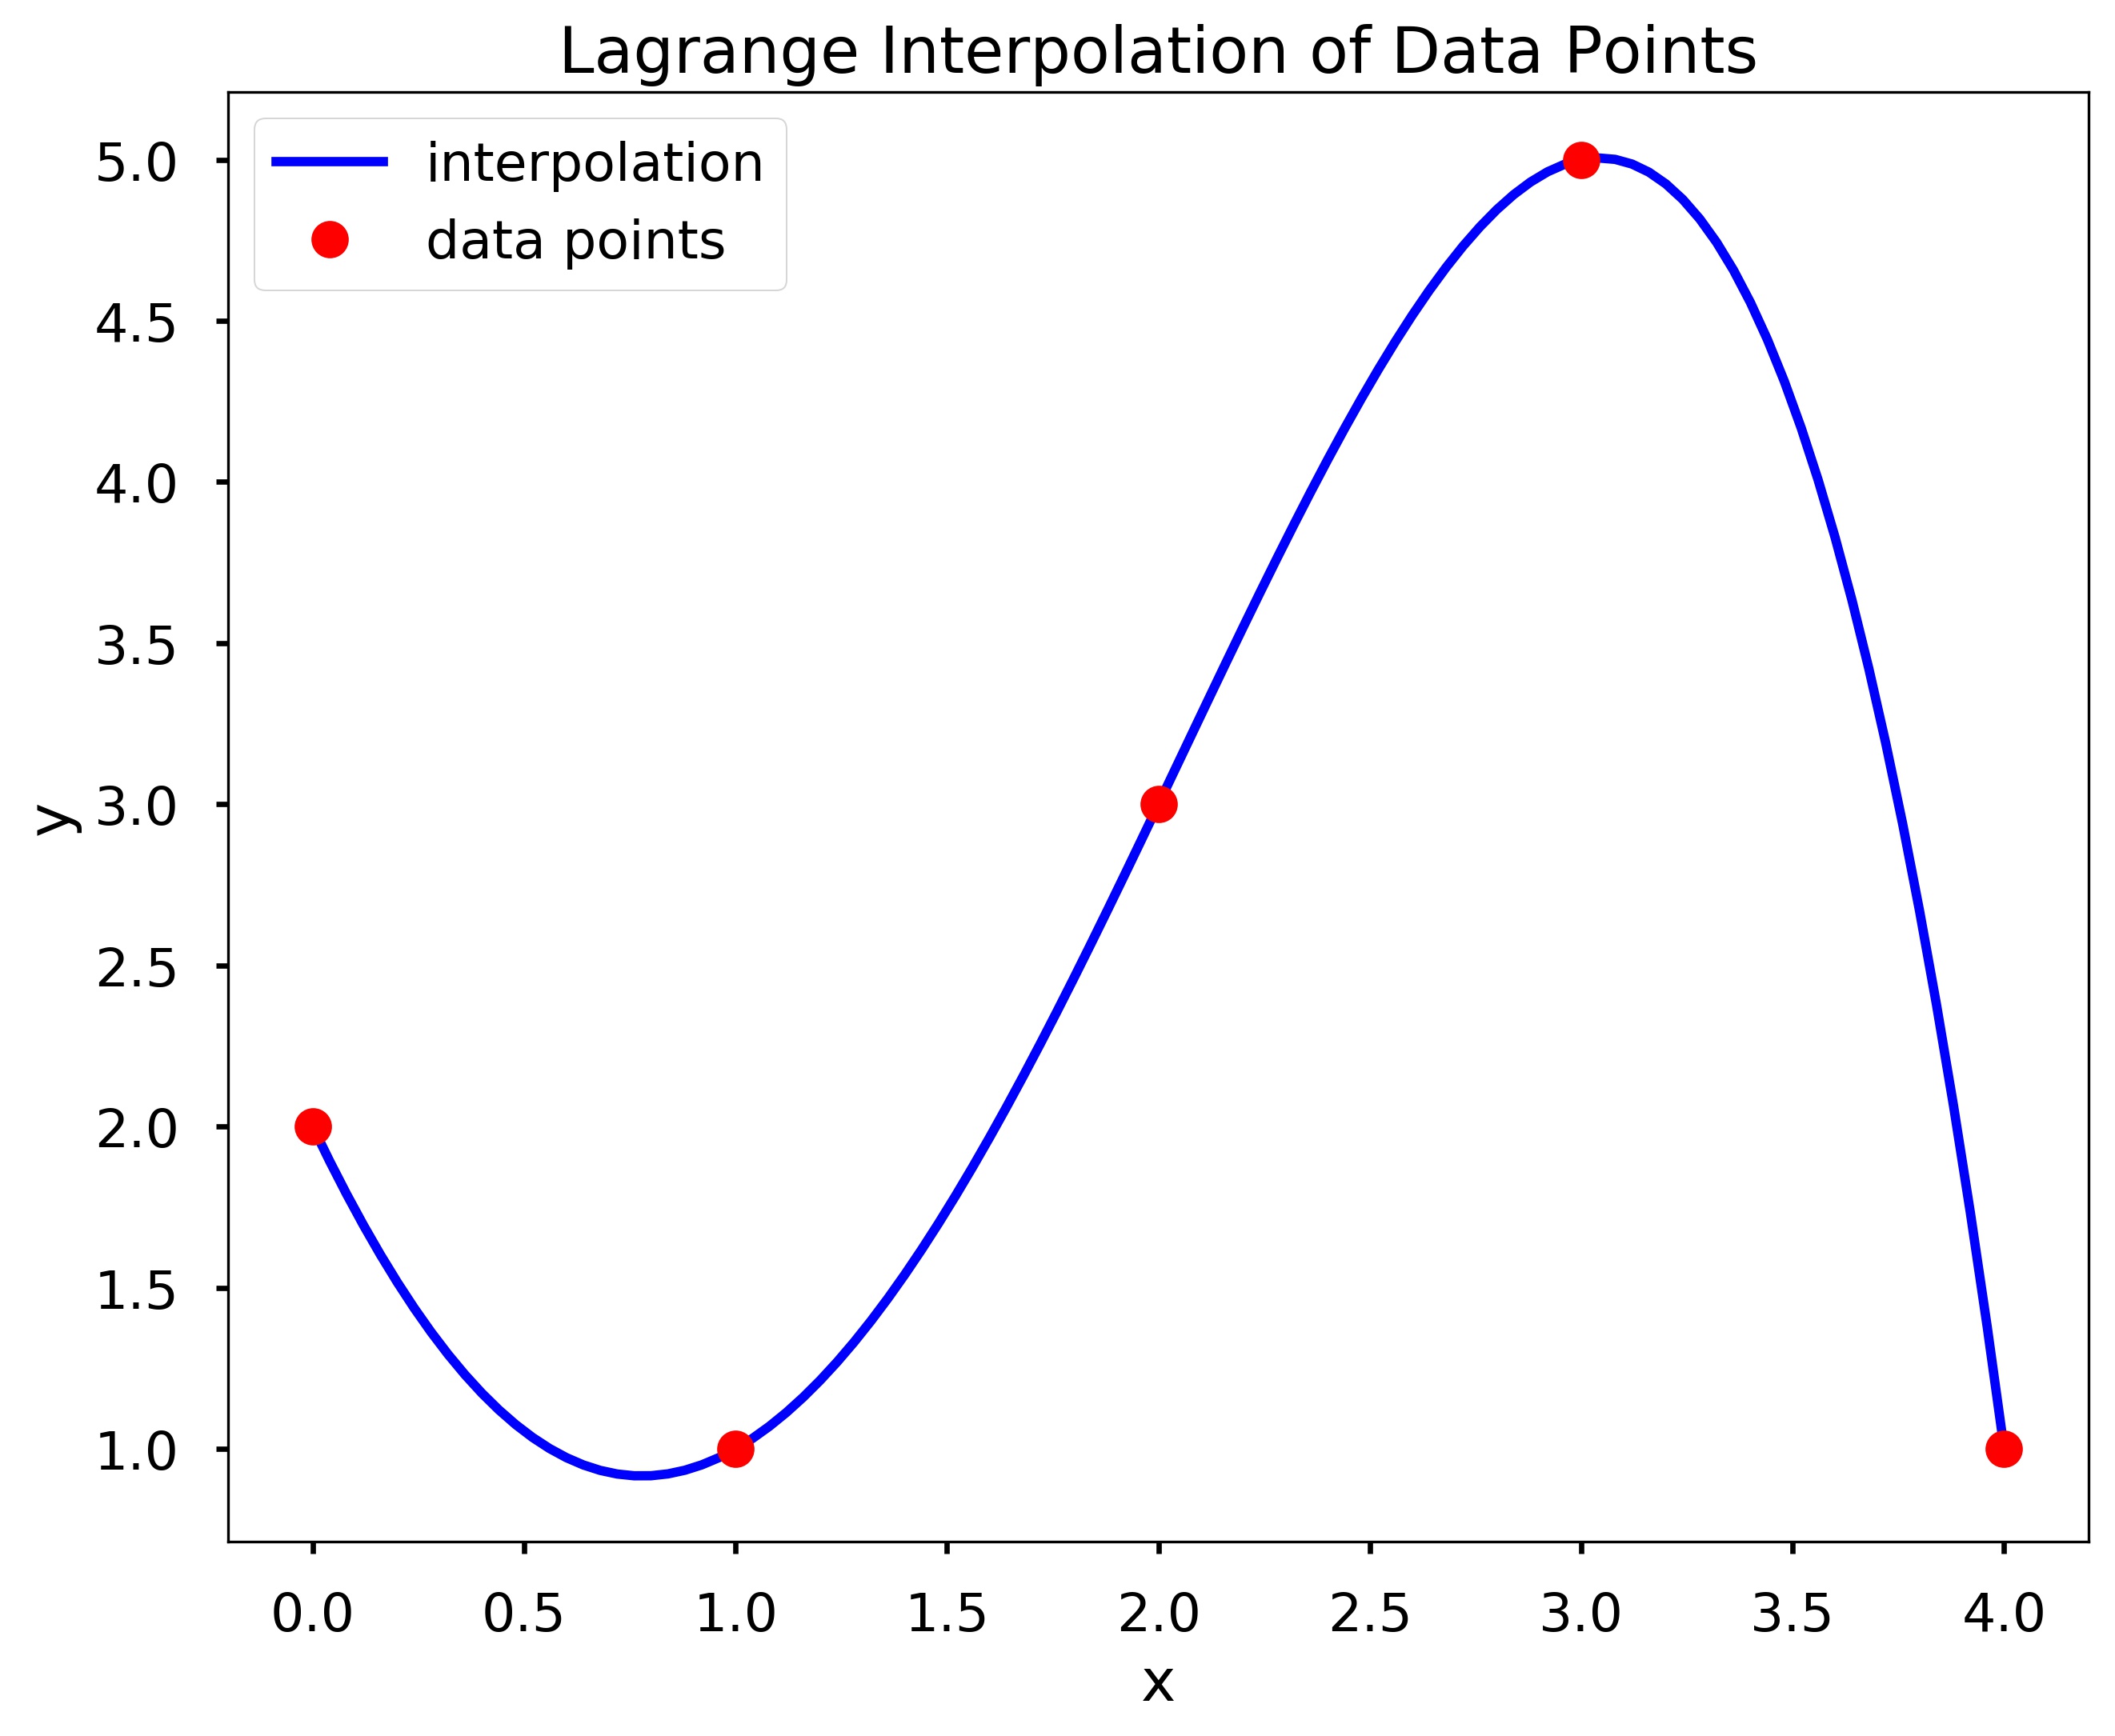 Lagrange interpolation